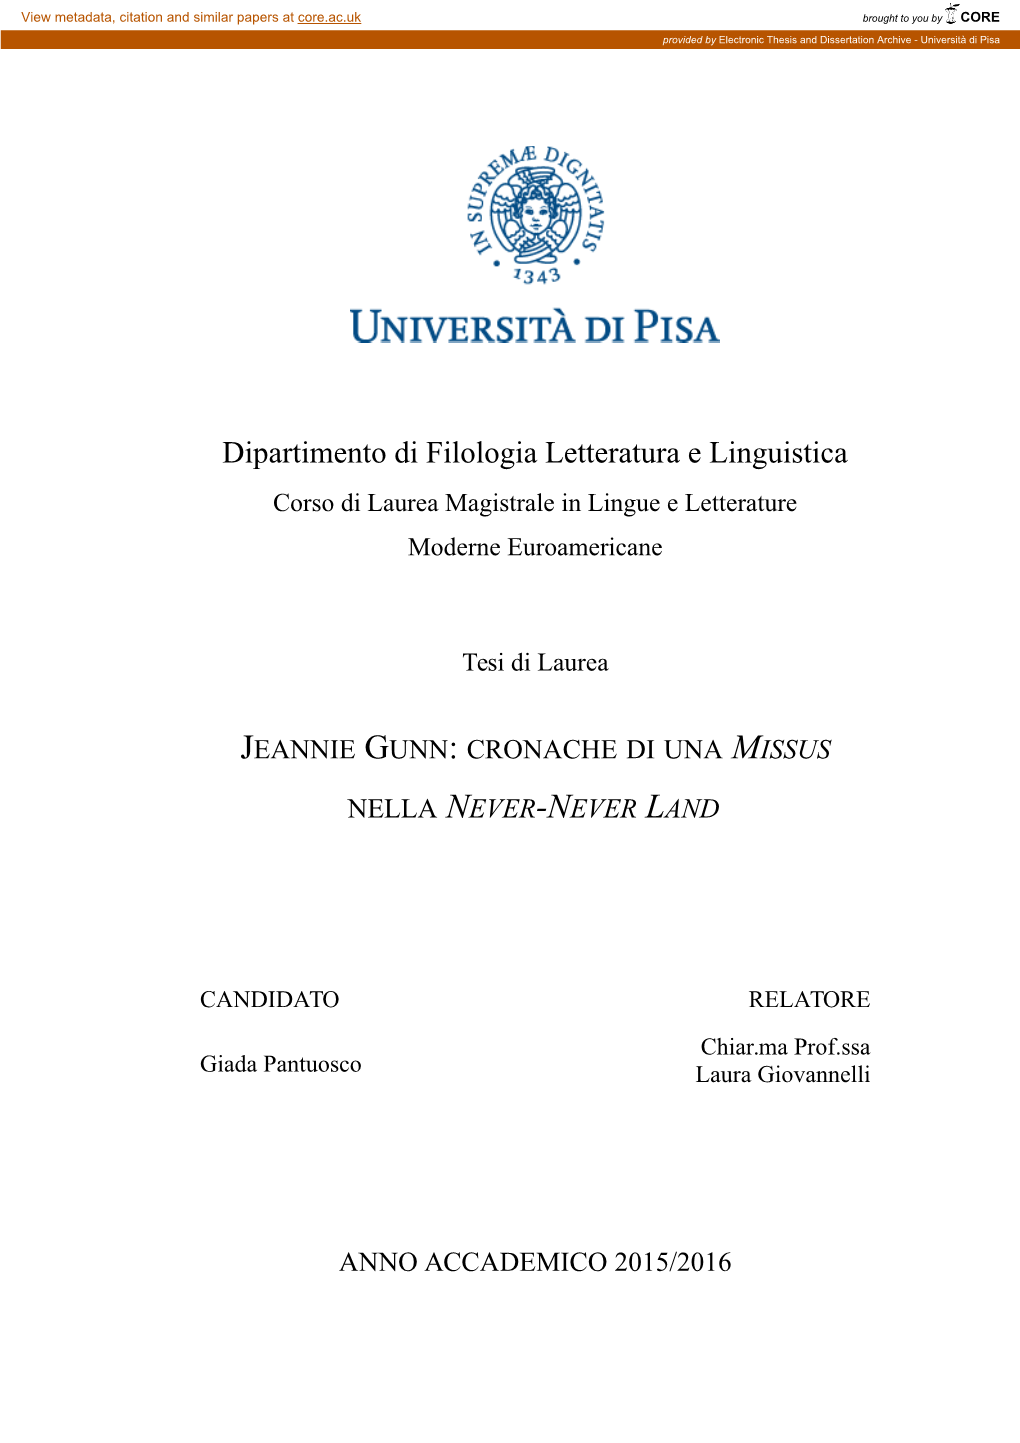 Dipartimento Di Filologia Letteratura E Linguistica Corso Di Laurea Magistrale in Lingue E Letterature Moderne Euroamericane